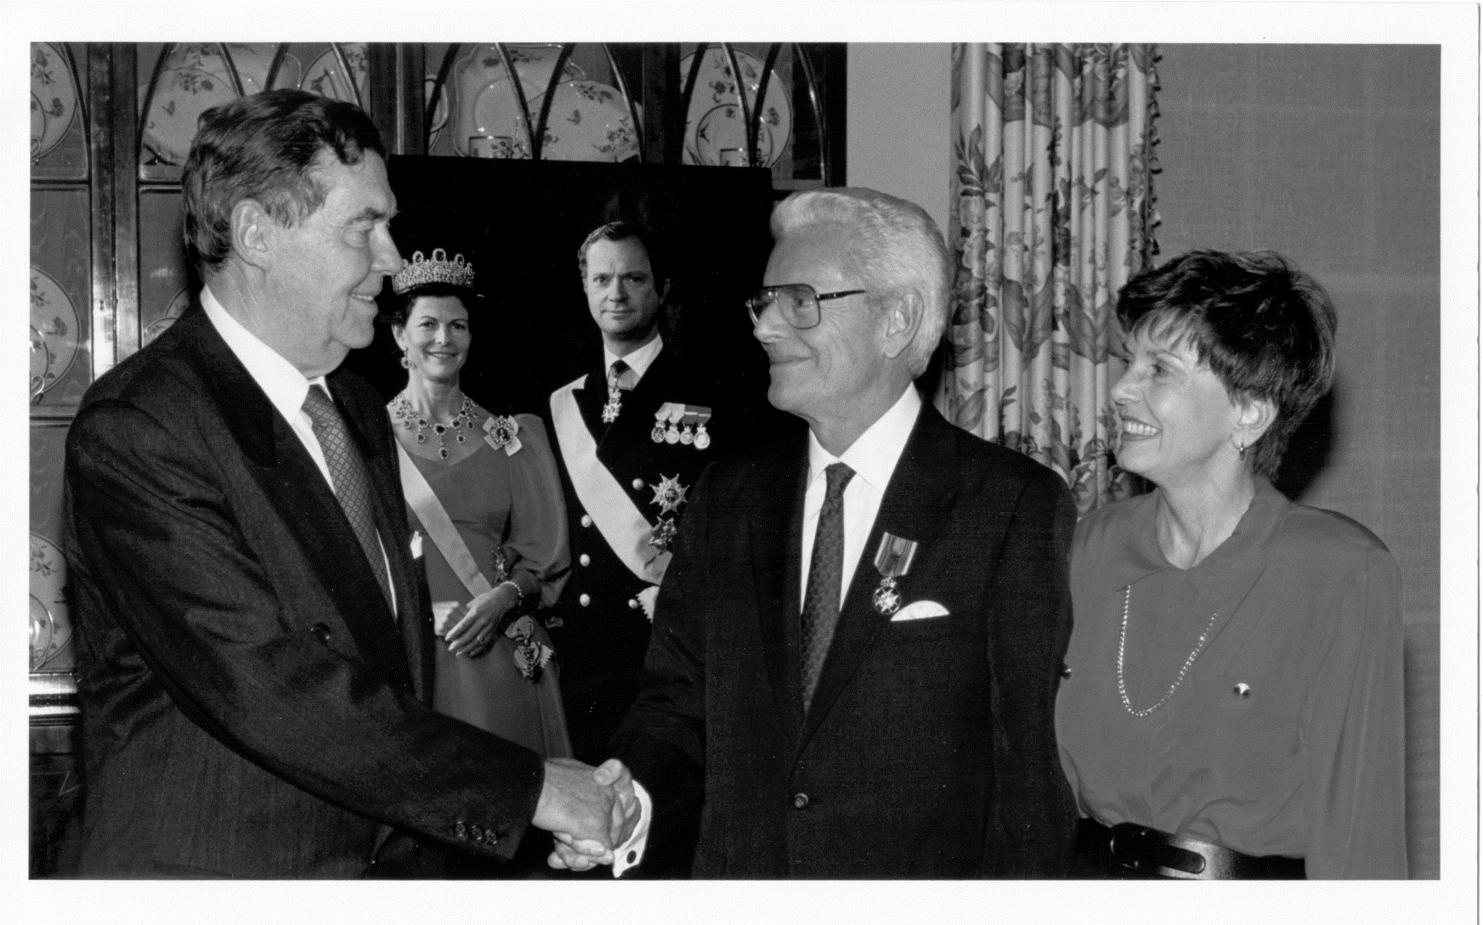 McGovern博士获得了由国王和瑞典女王奖的未身份代表授予休斯顿的皇家奖章（在背景中为图片）